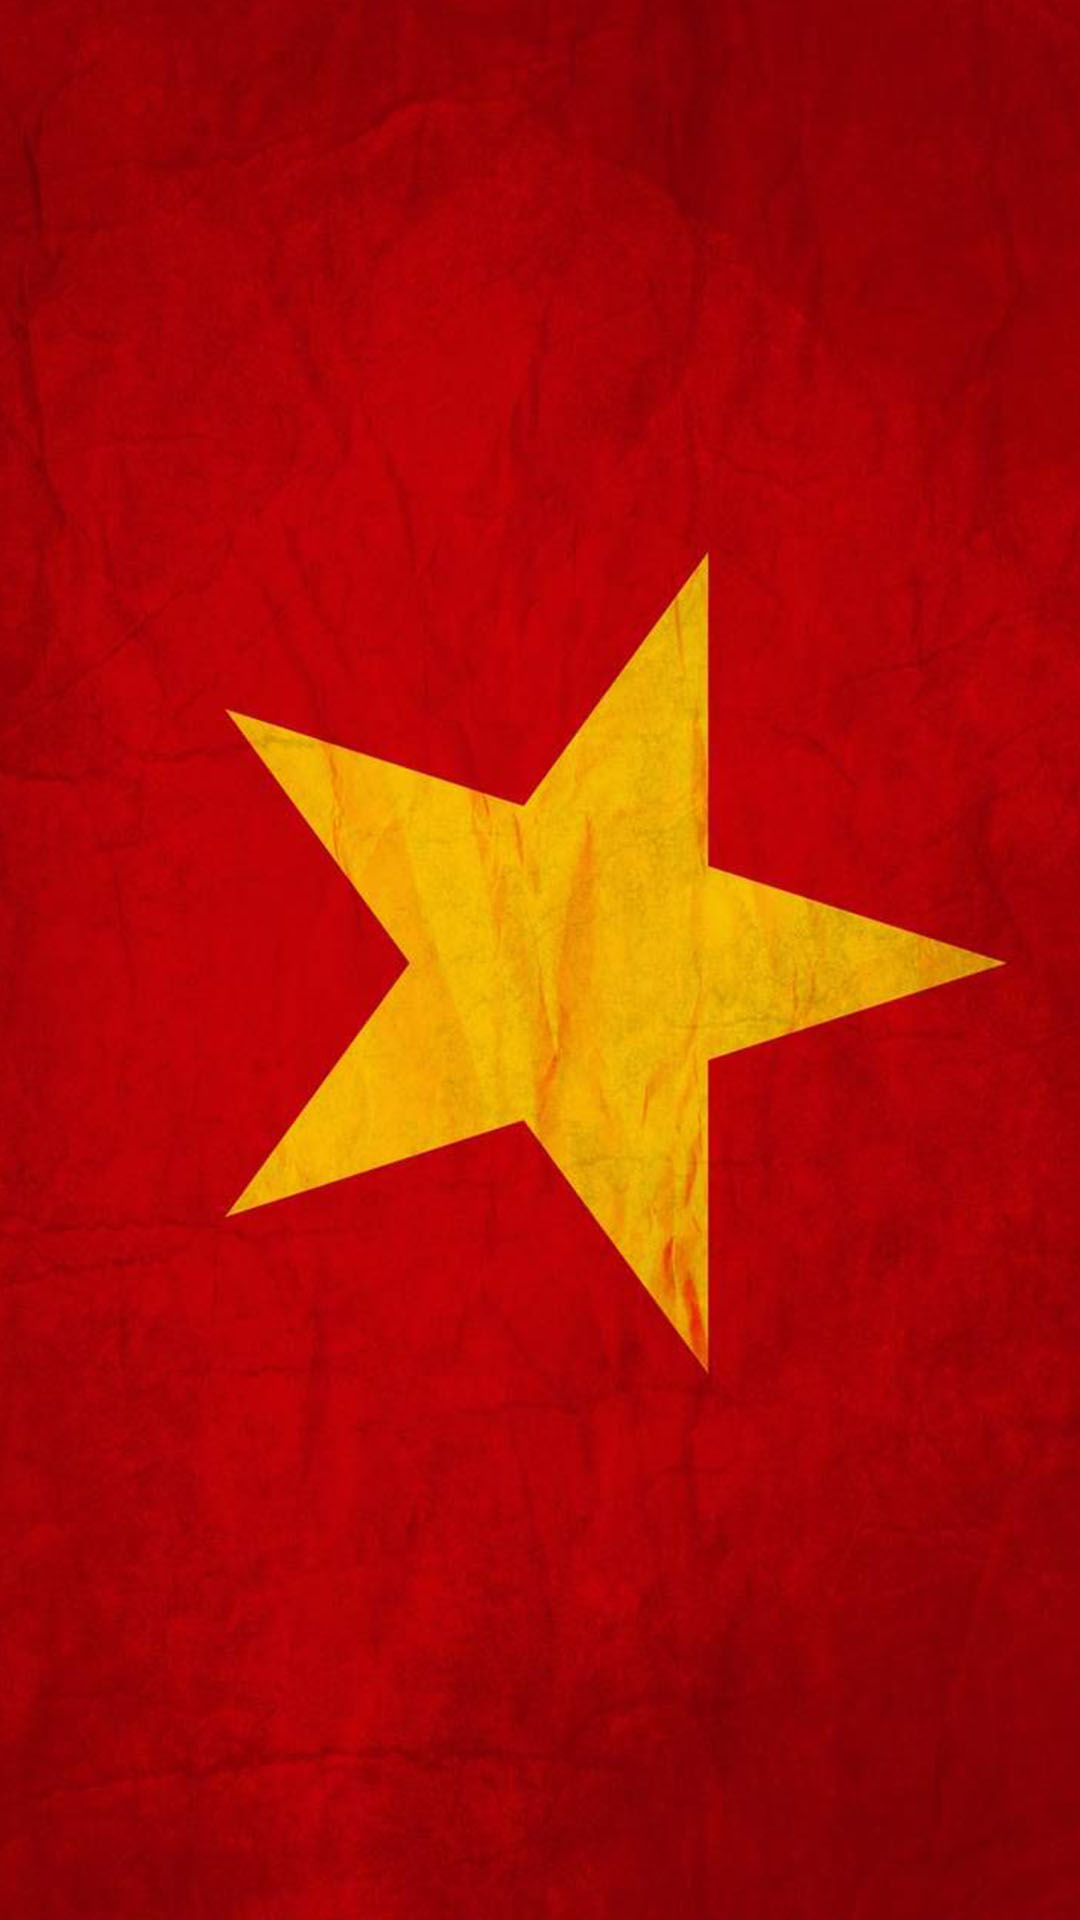 Hãy cùng khám phá hình ảnh cờ đỏ sao vàng cập nhật năm 2024, nơi mà truyền thống vẫn được giữ gìn và phát triển. Vào ngày hội lớn của đất nước, sức sống của các thế hệ cùng chất đầy trong biểu tượng cho sự đoàn kết và tiến bộ này.